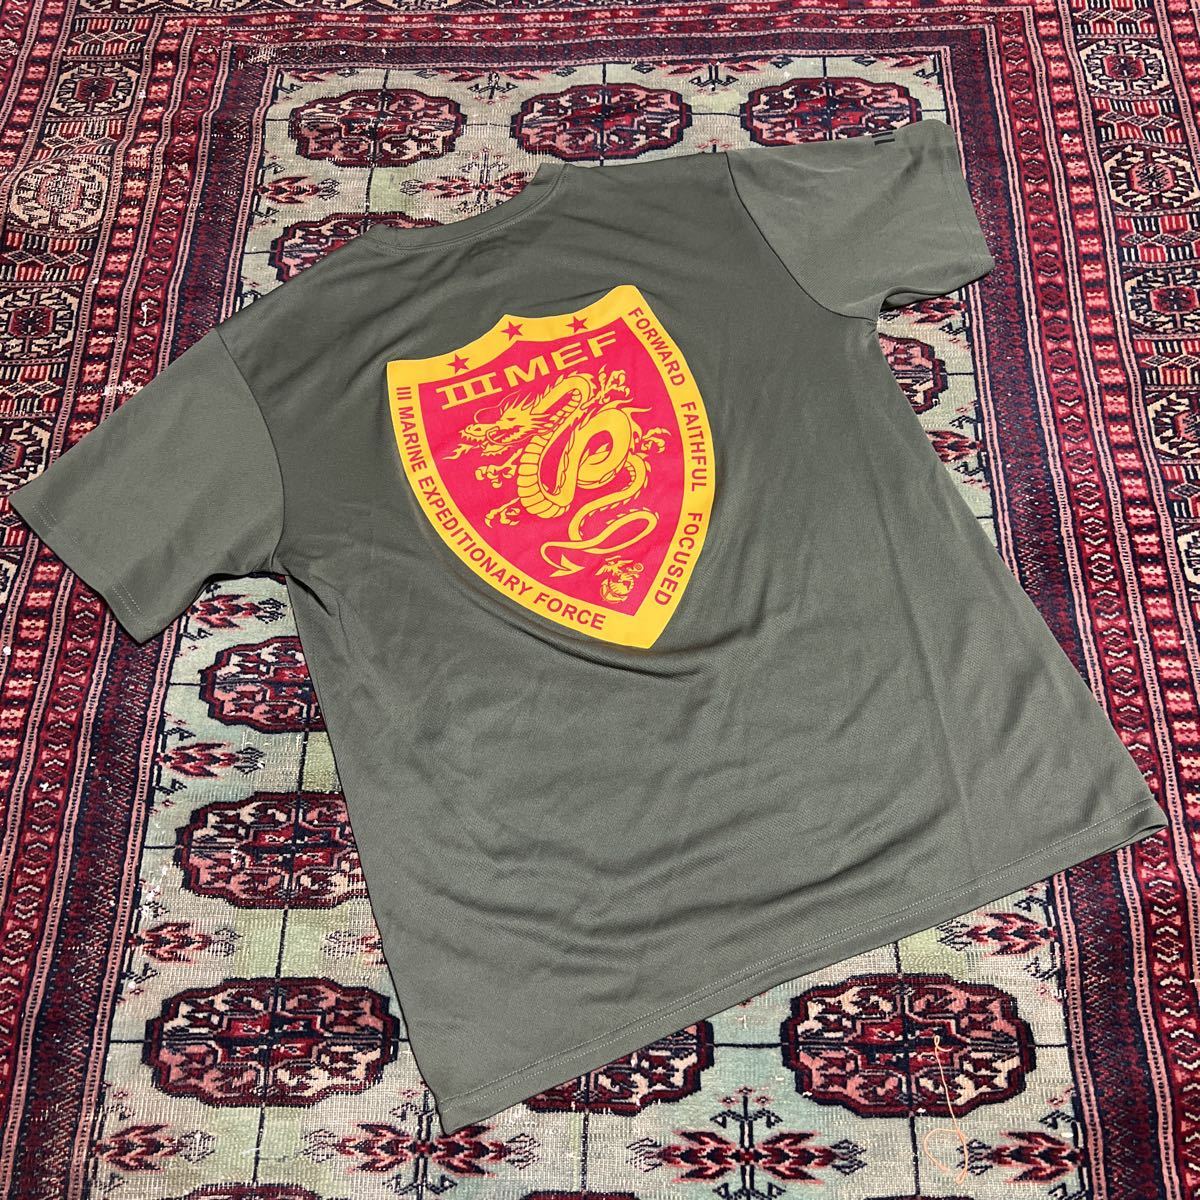 米軍 海兵隊 実物 SOFFE製 USMC III MEF Marine Expeditionary Force Tシャツ サイズ M 極美品_画像1